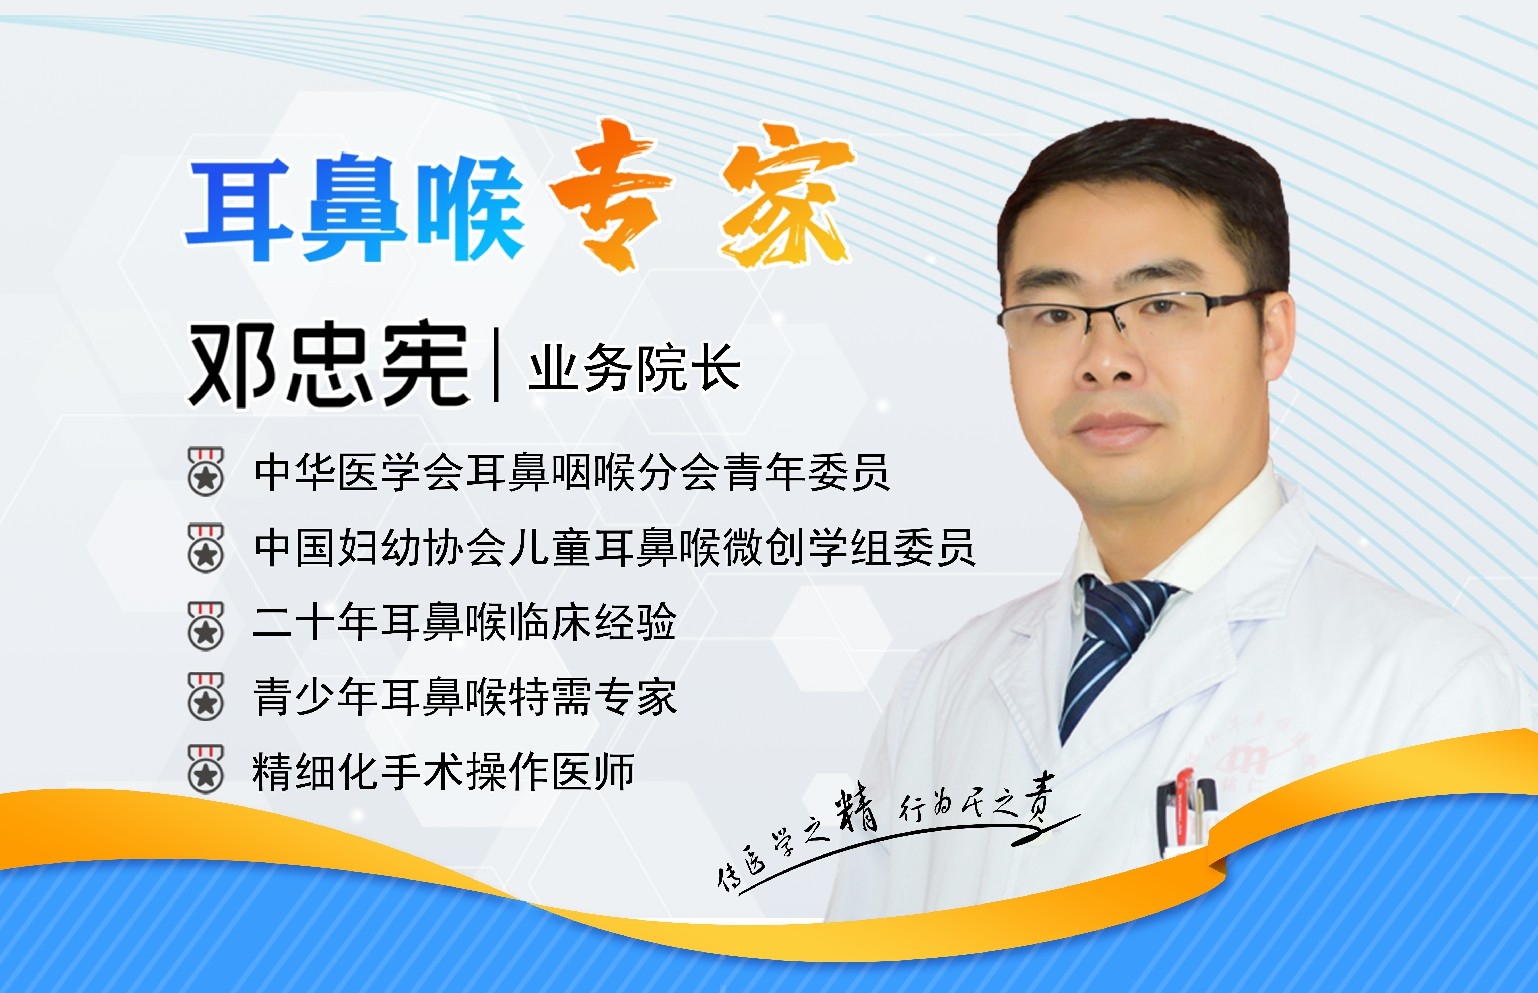 贵阳铭仁耳鼻喉医院邓忠宪院长   做一个善于创新的好医生(图1)